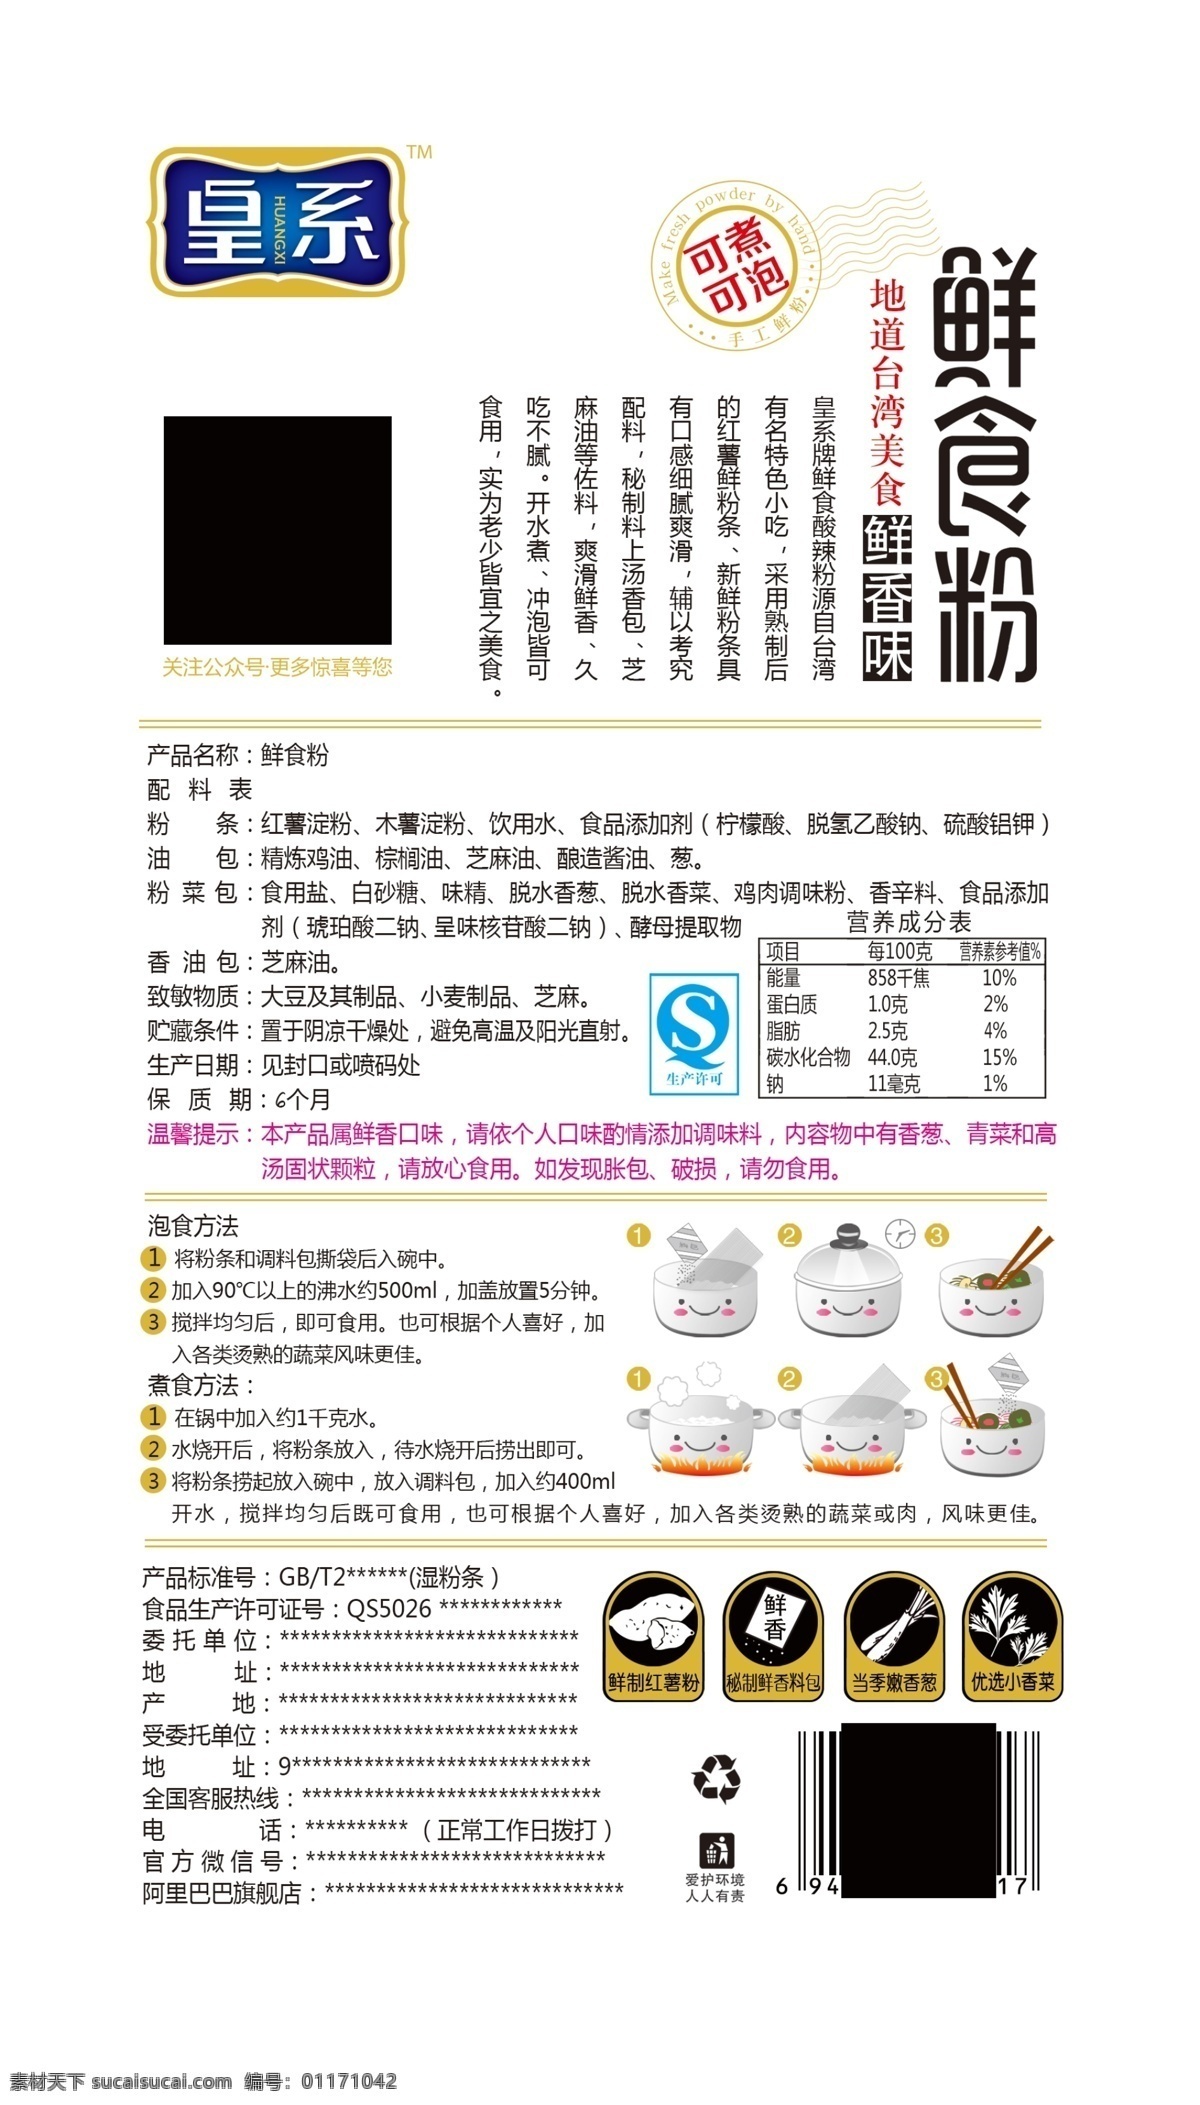 酸辣粉 包装袋 logo 食品 鲜粉条 台湾美食 鲜香味 包装设计